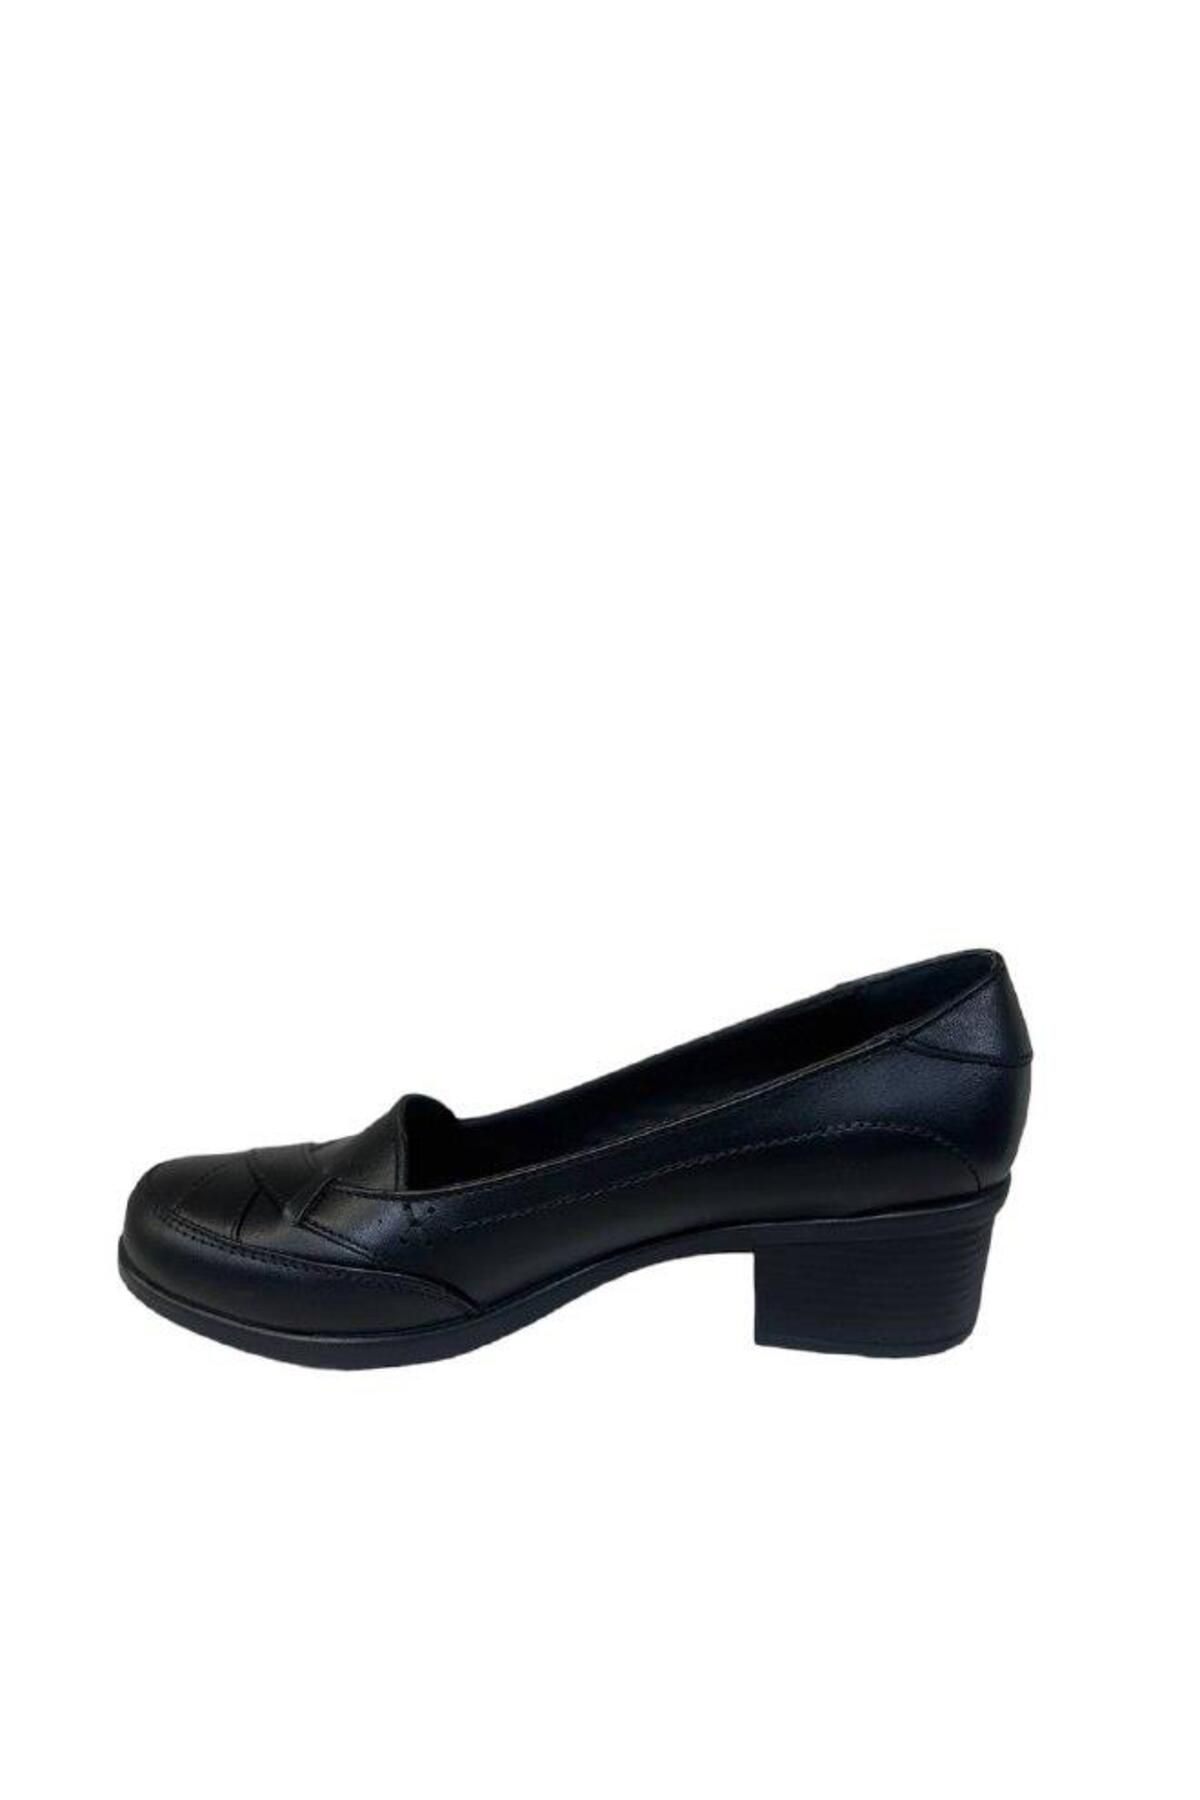 PUNTO 562108 Hakiki Deri Kalın Kısa Topuklu Rahat Kadın Topuklu Ayakkabı